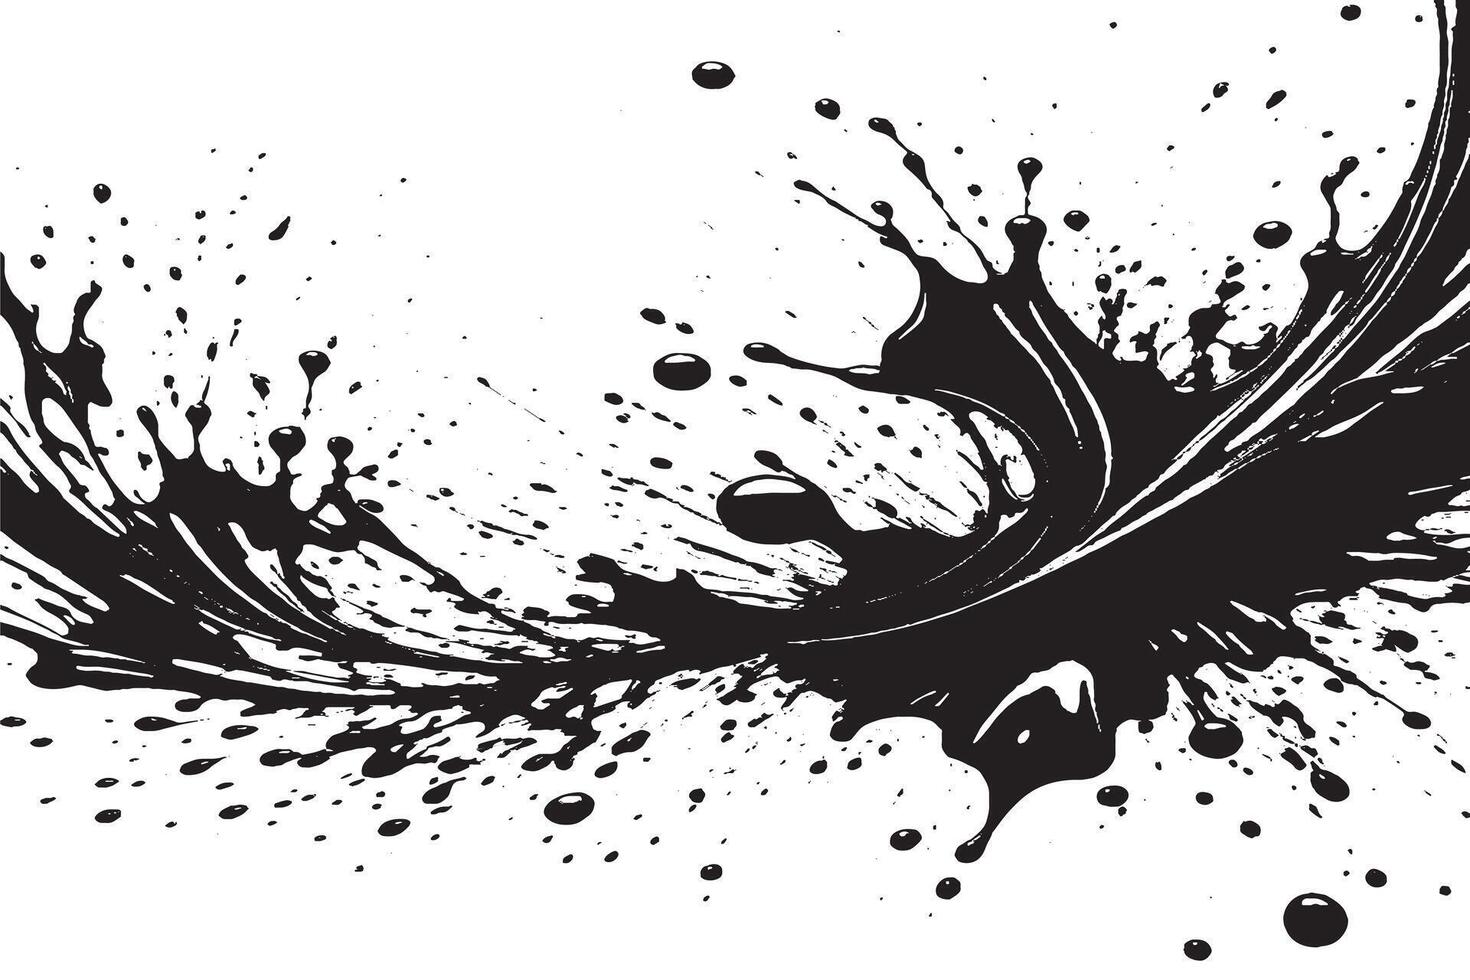 negro tinta salpicaduras en blanco lona monocromo antecedentes textura vector